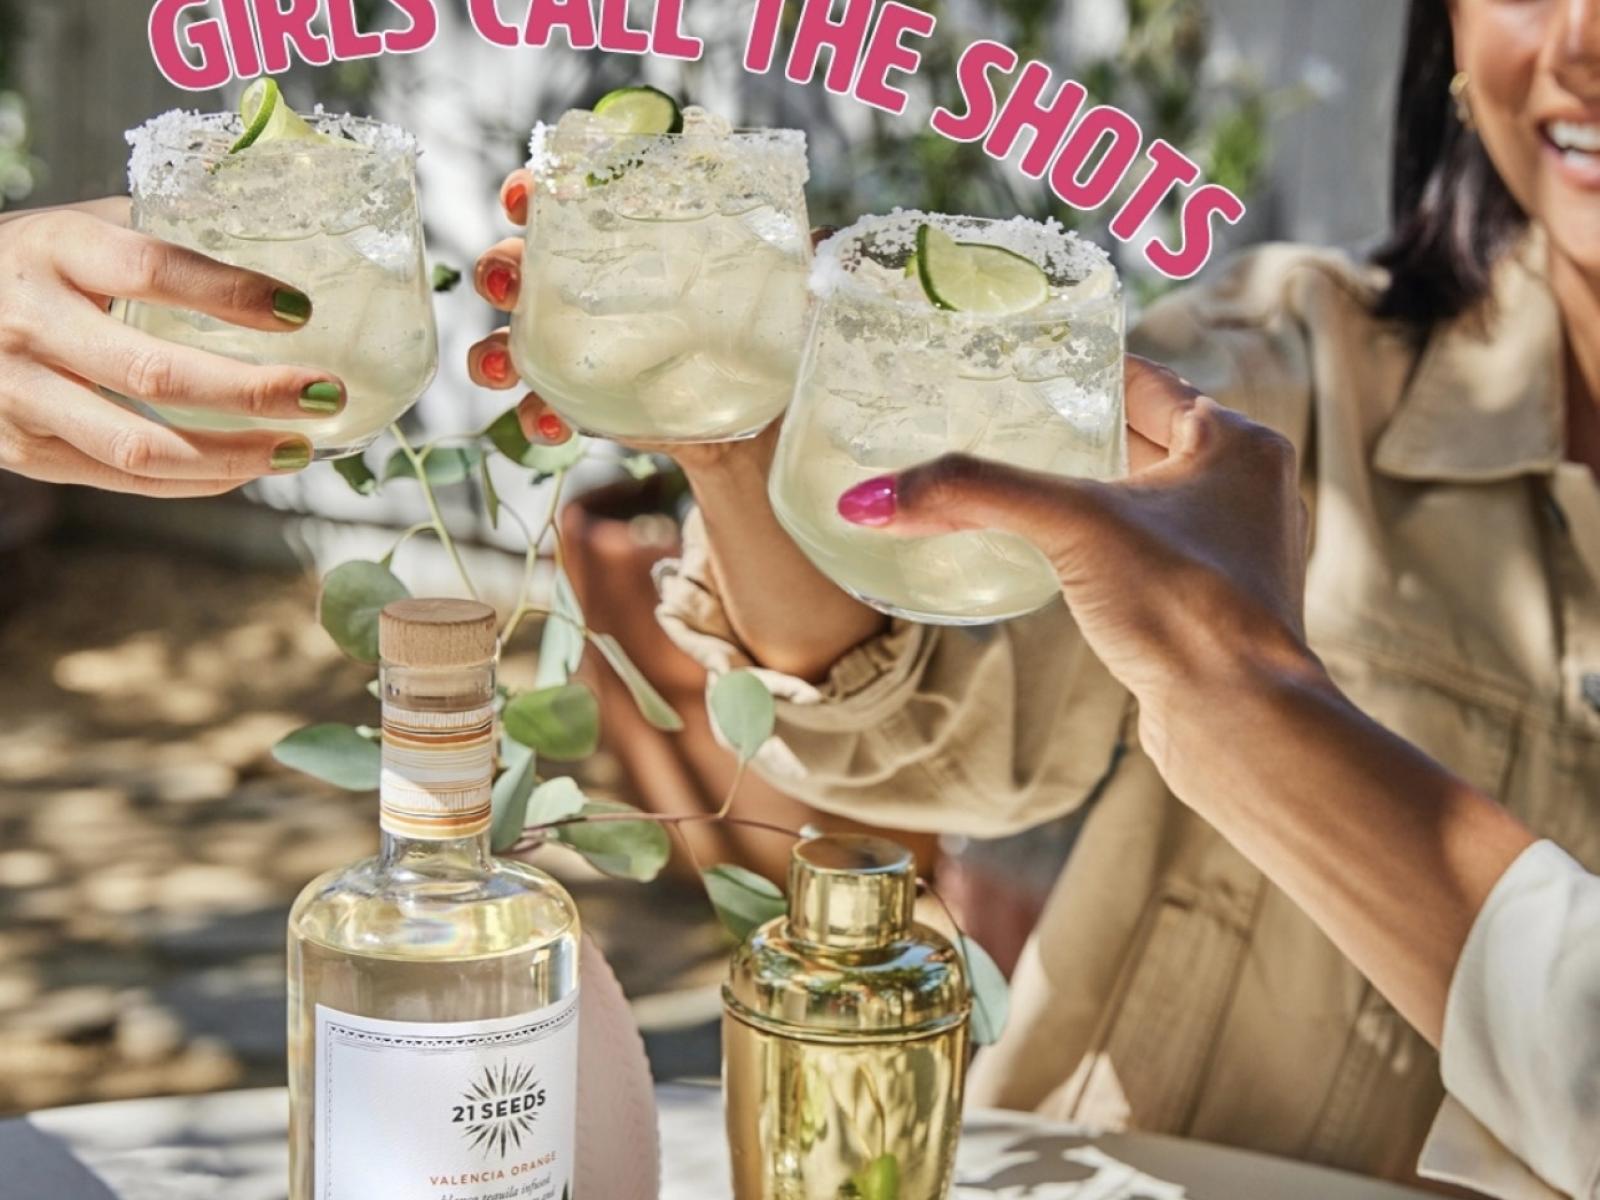 Main image for offer titled Girls Call the Shots- Joselito's Tujunga Tasting 